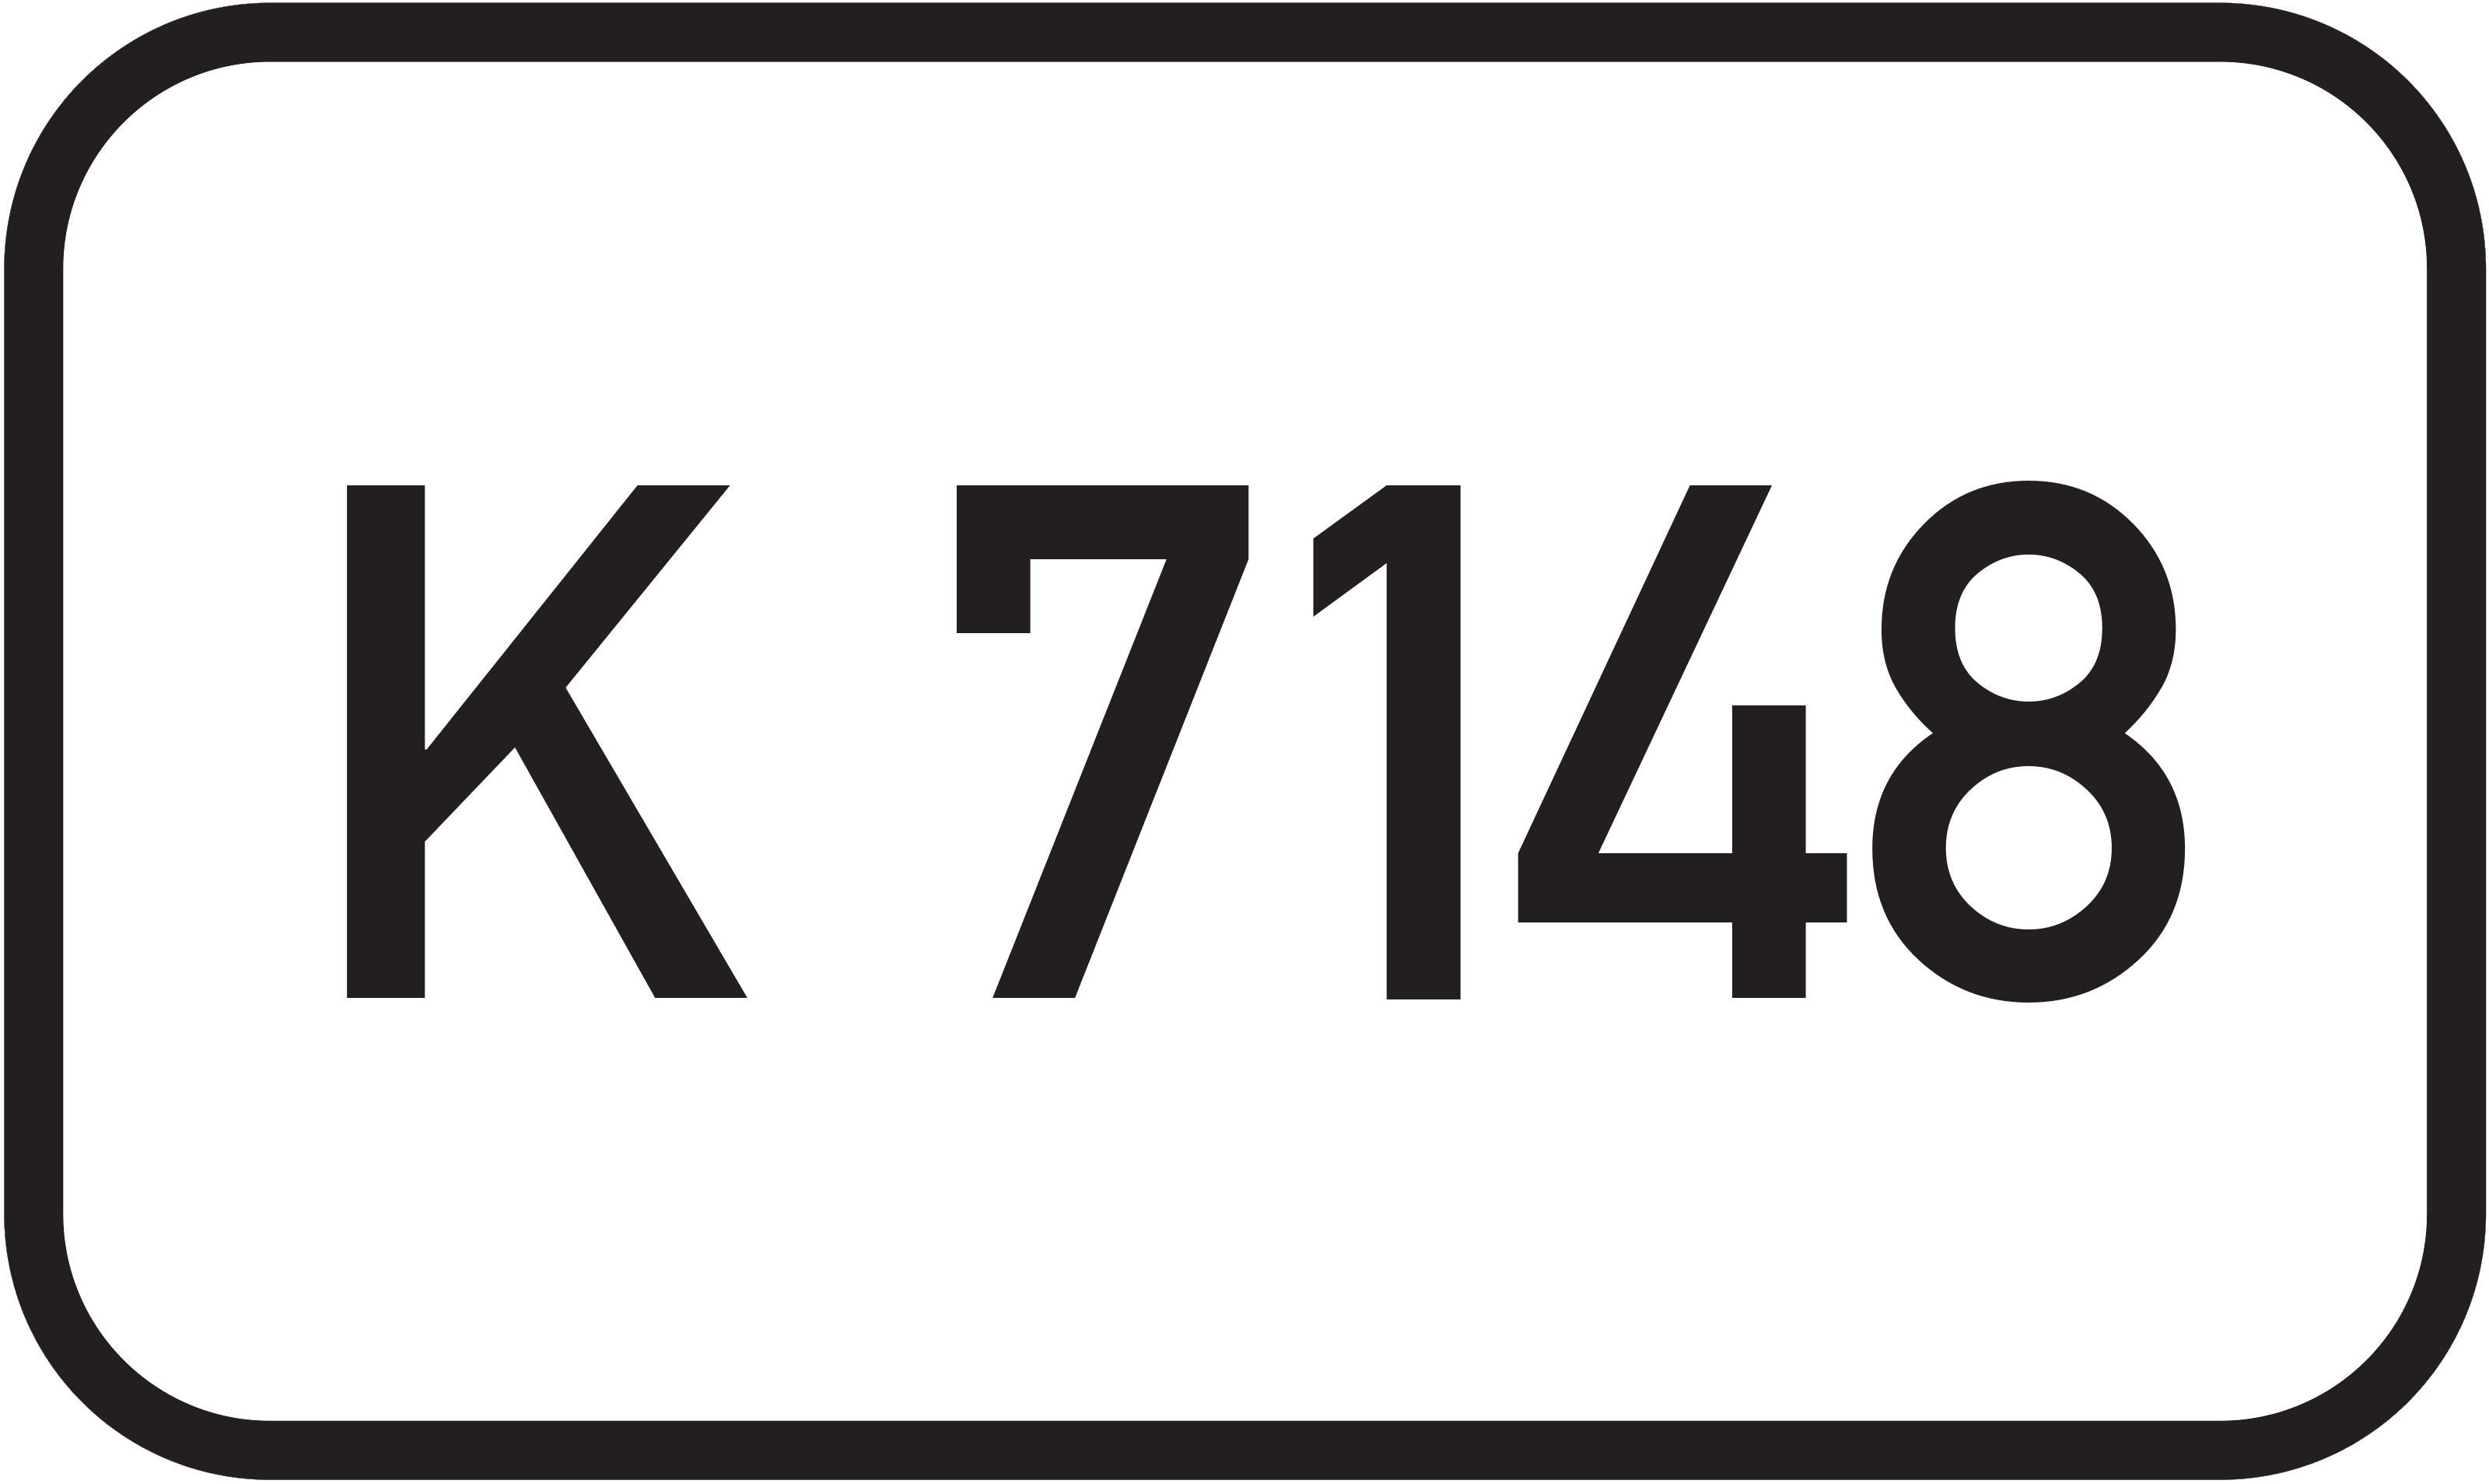 Kreisstraße K 7148